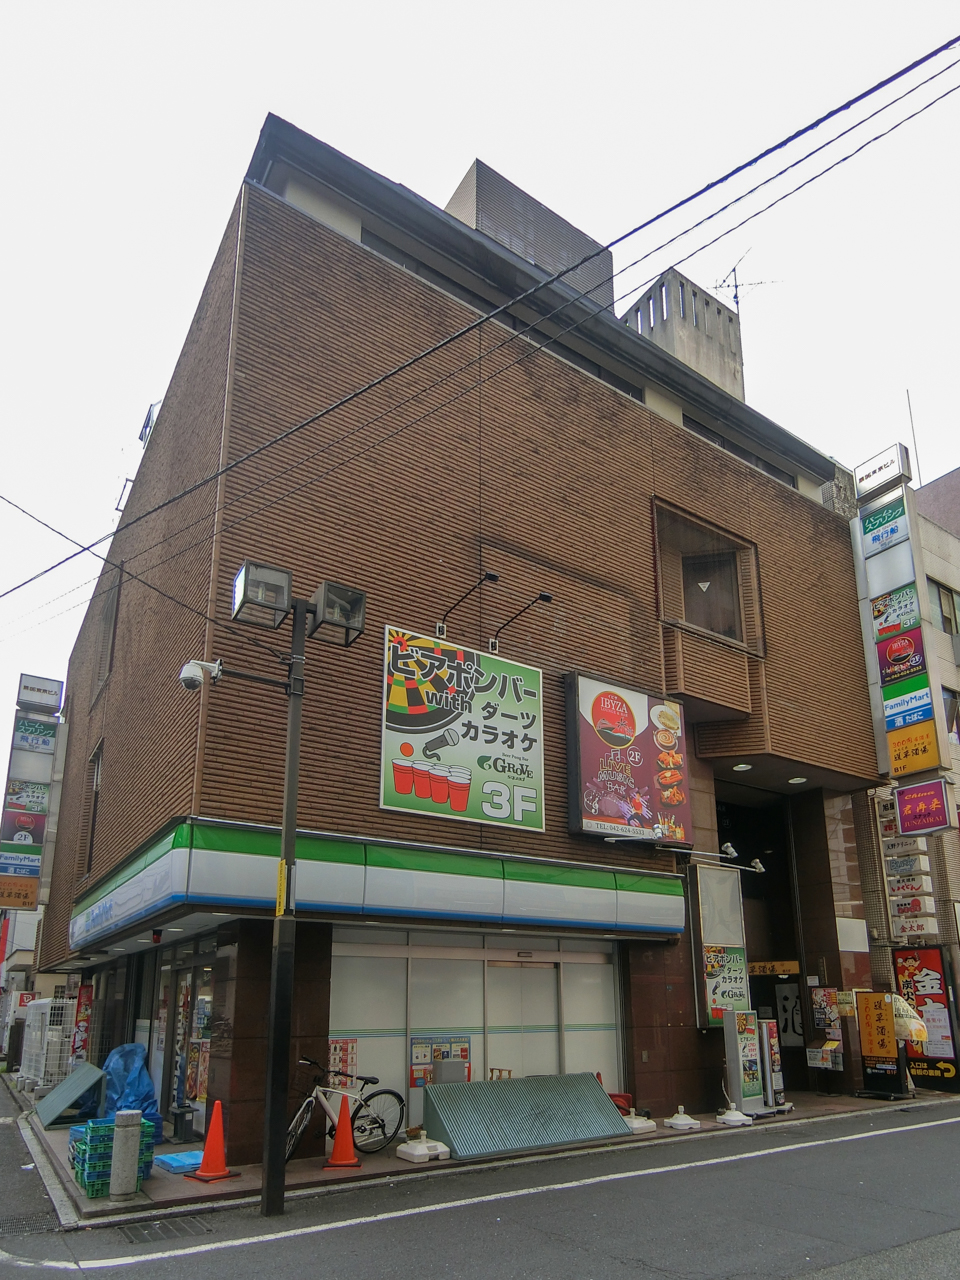 95th Tokyobuilding